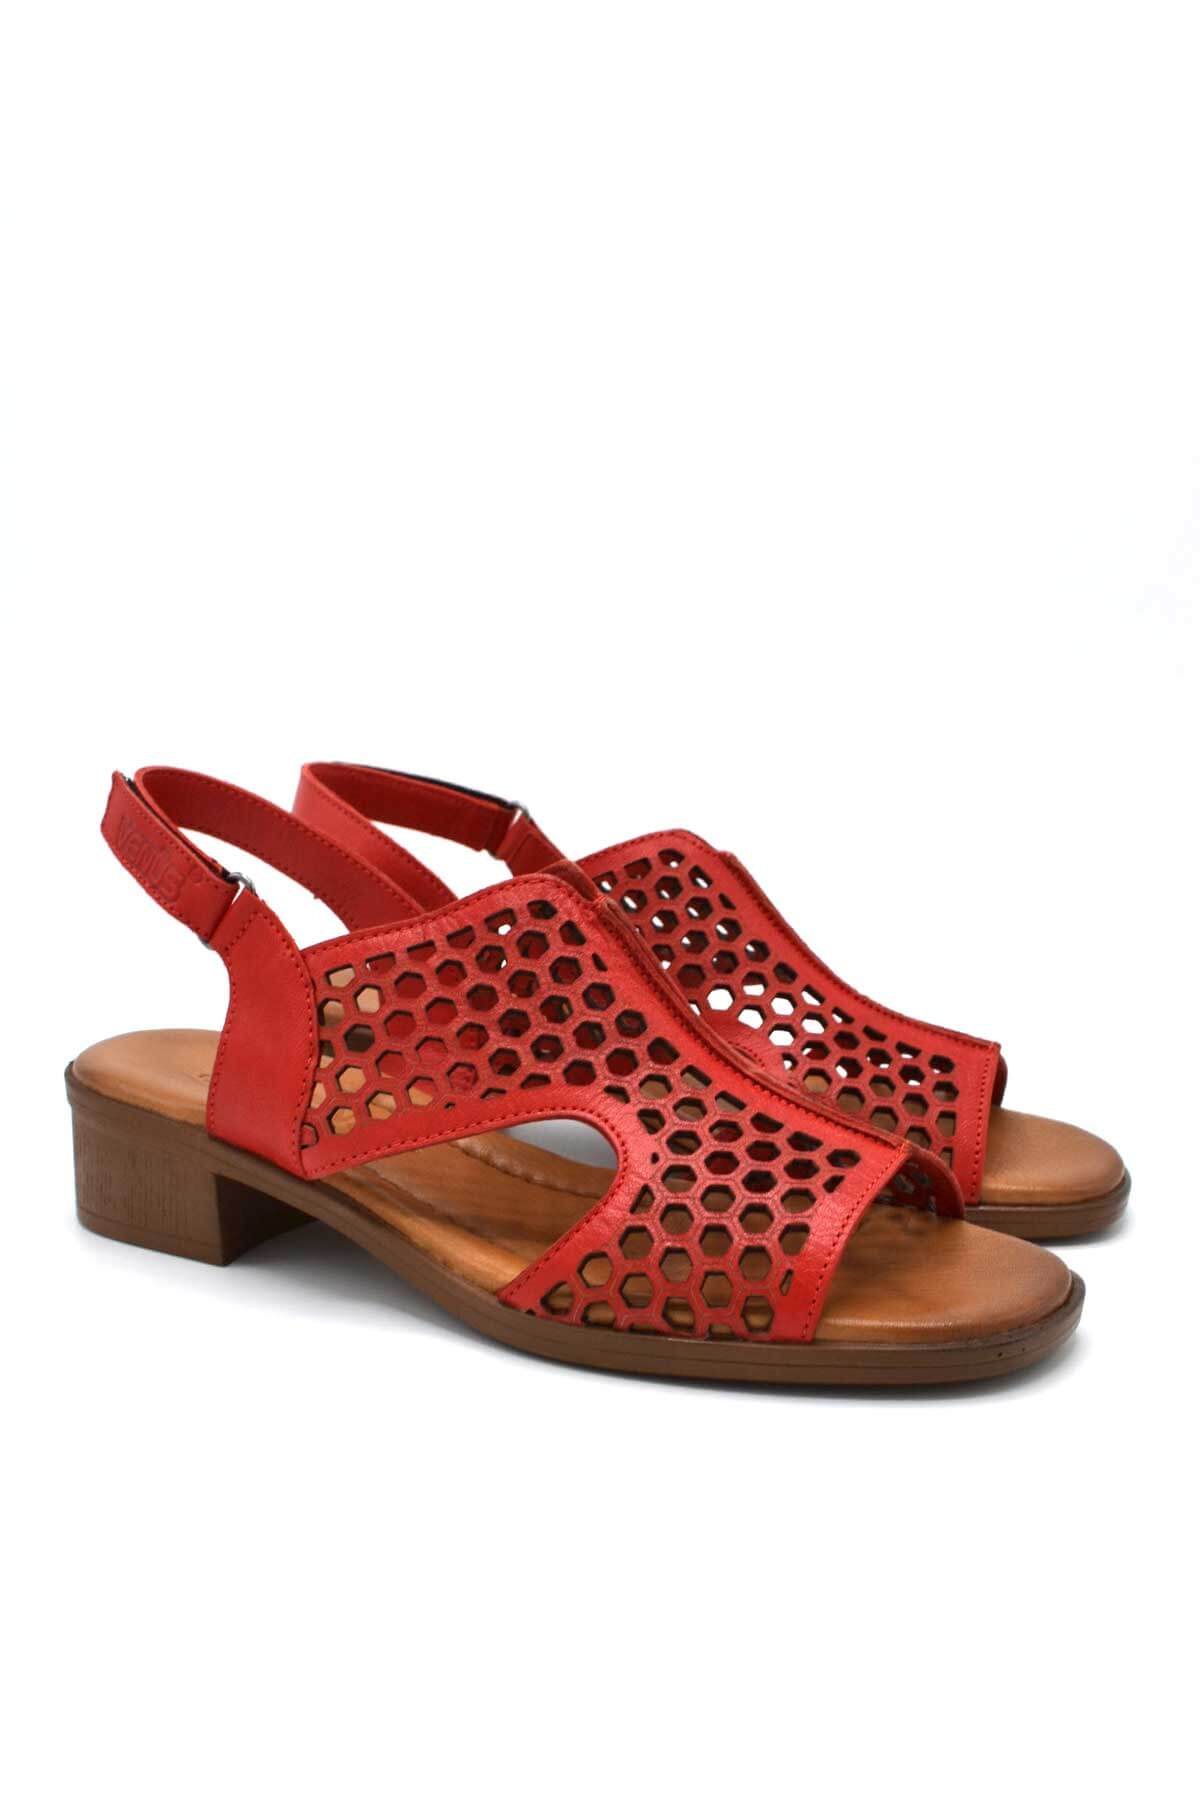 Kadın Deri Sandalet Kırmızı 22986007 - Thumbnail